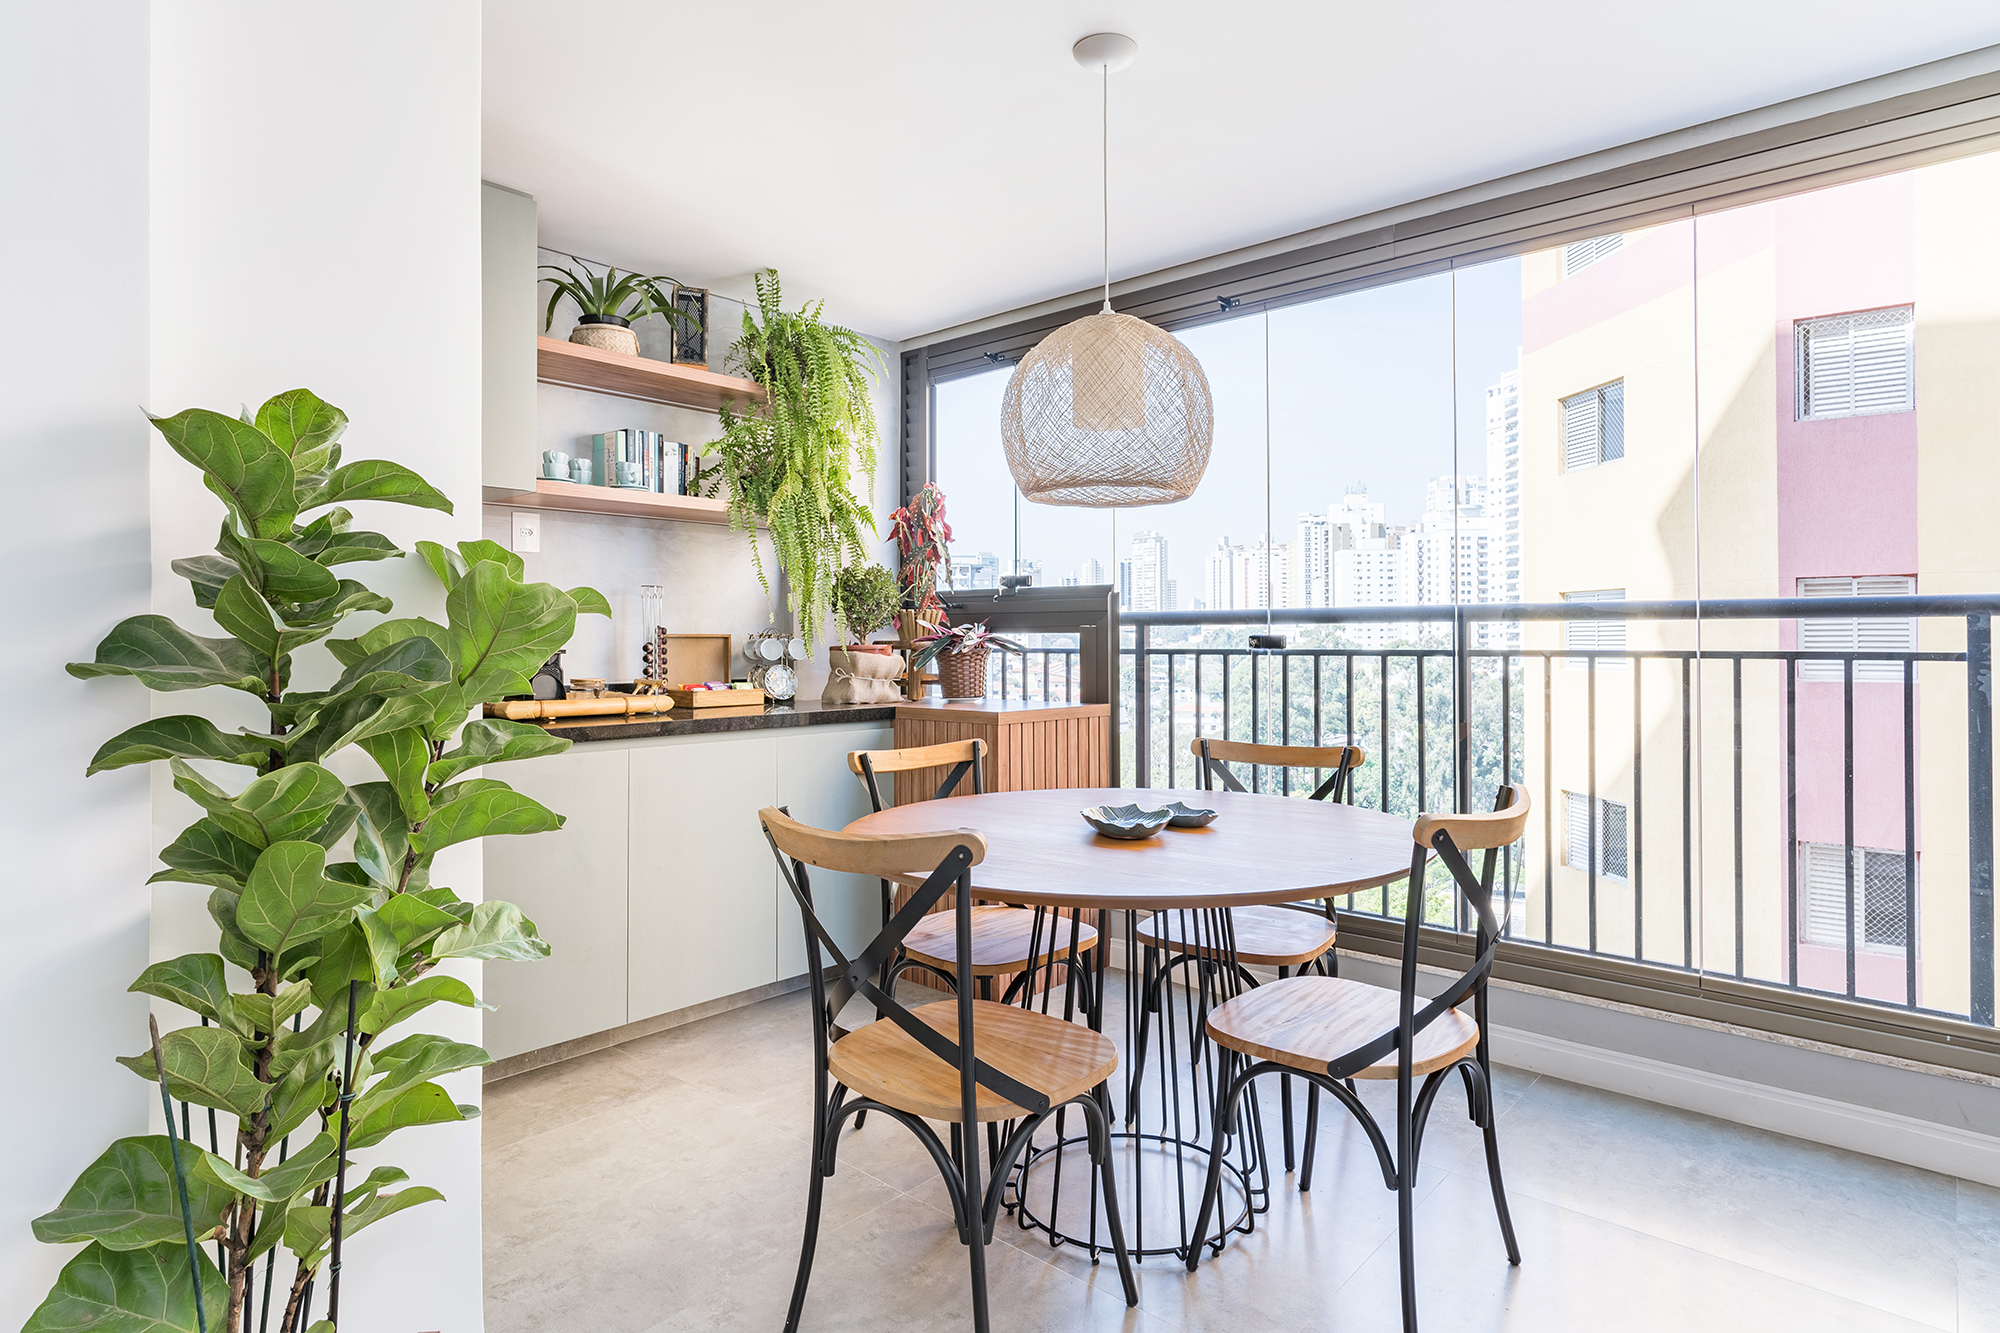 Apê de 62 m² une estilo praiano com toques industriais. Projeto de Letícia de Nóbrega. Na foto, varanda com canto do café, mesa de refeições e plantas.